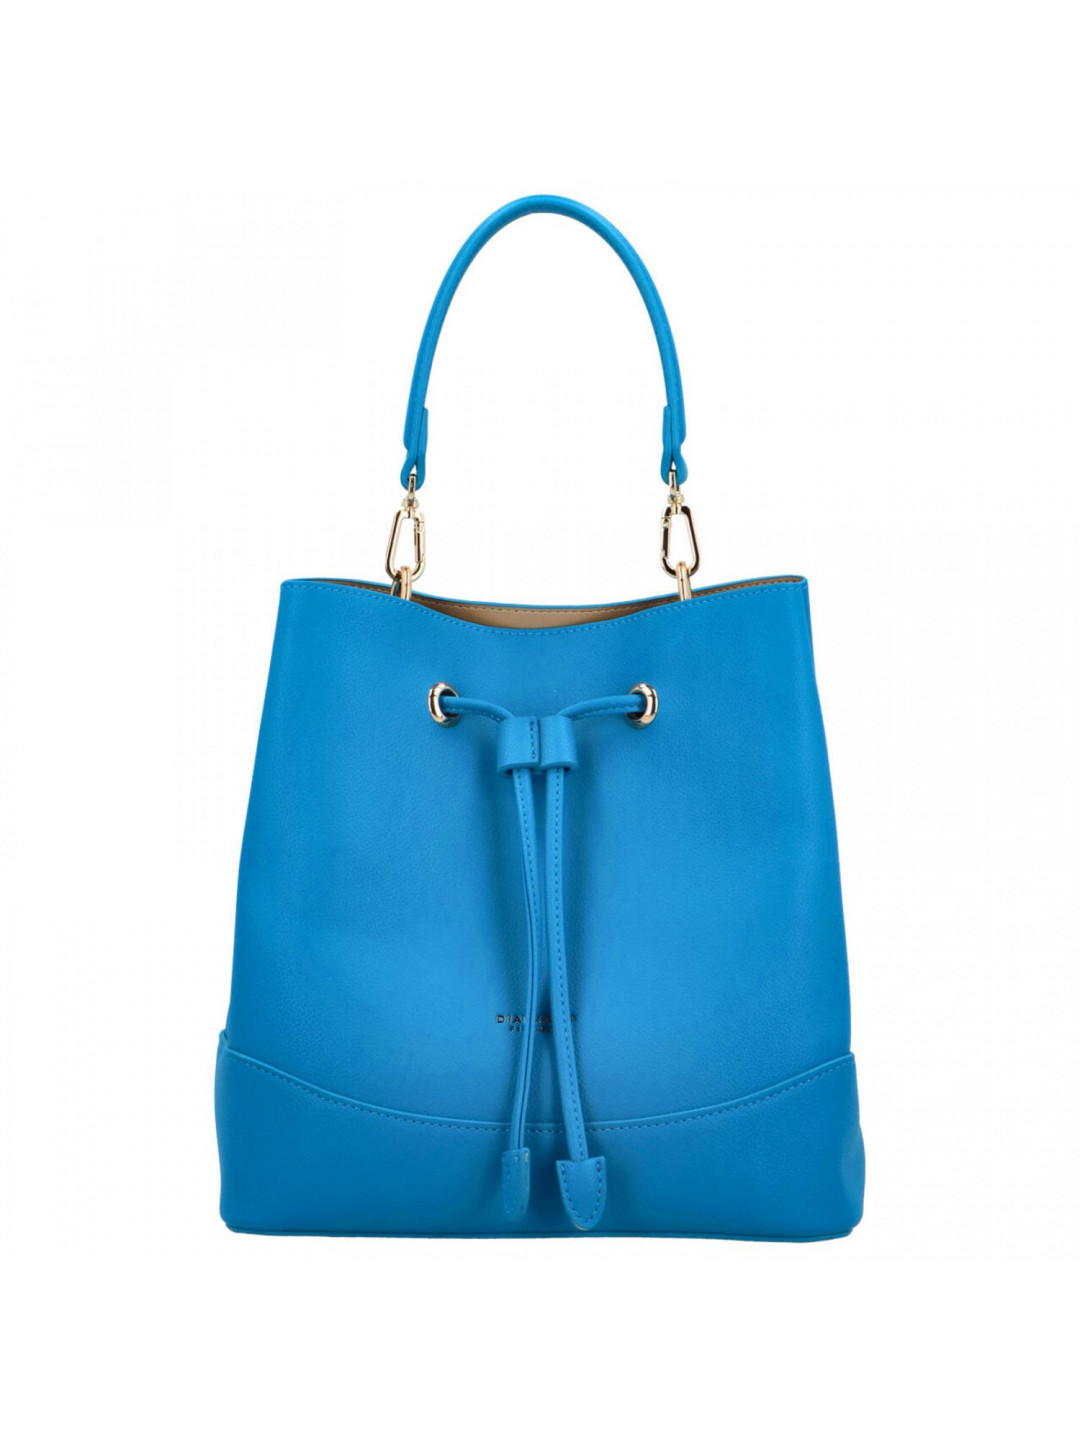 Dámská kabelka přes rameno modrá – DIANA & CO Fency